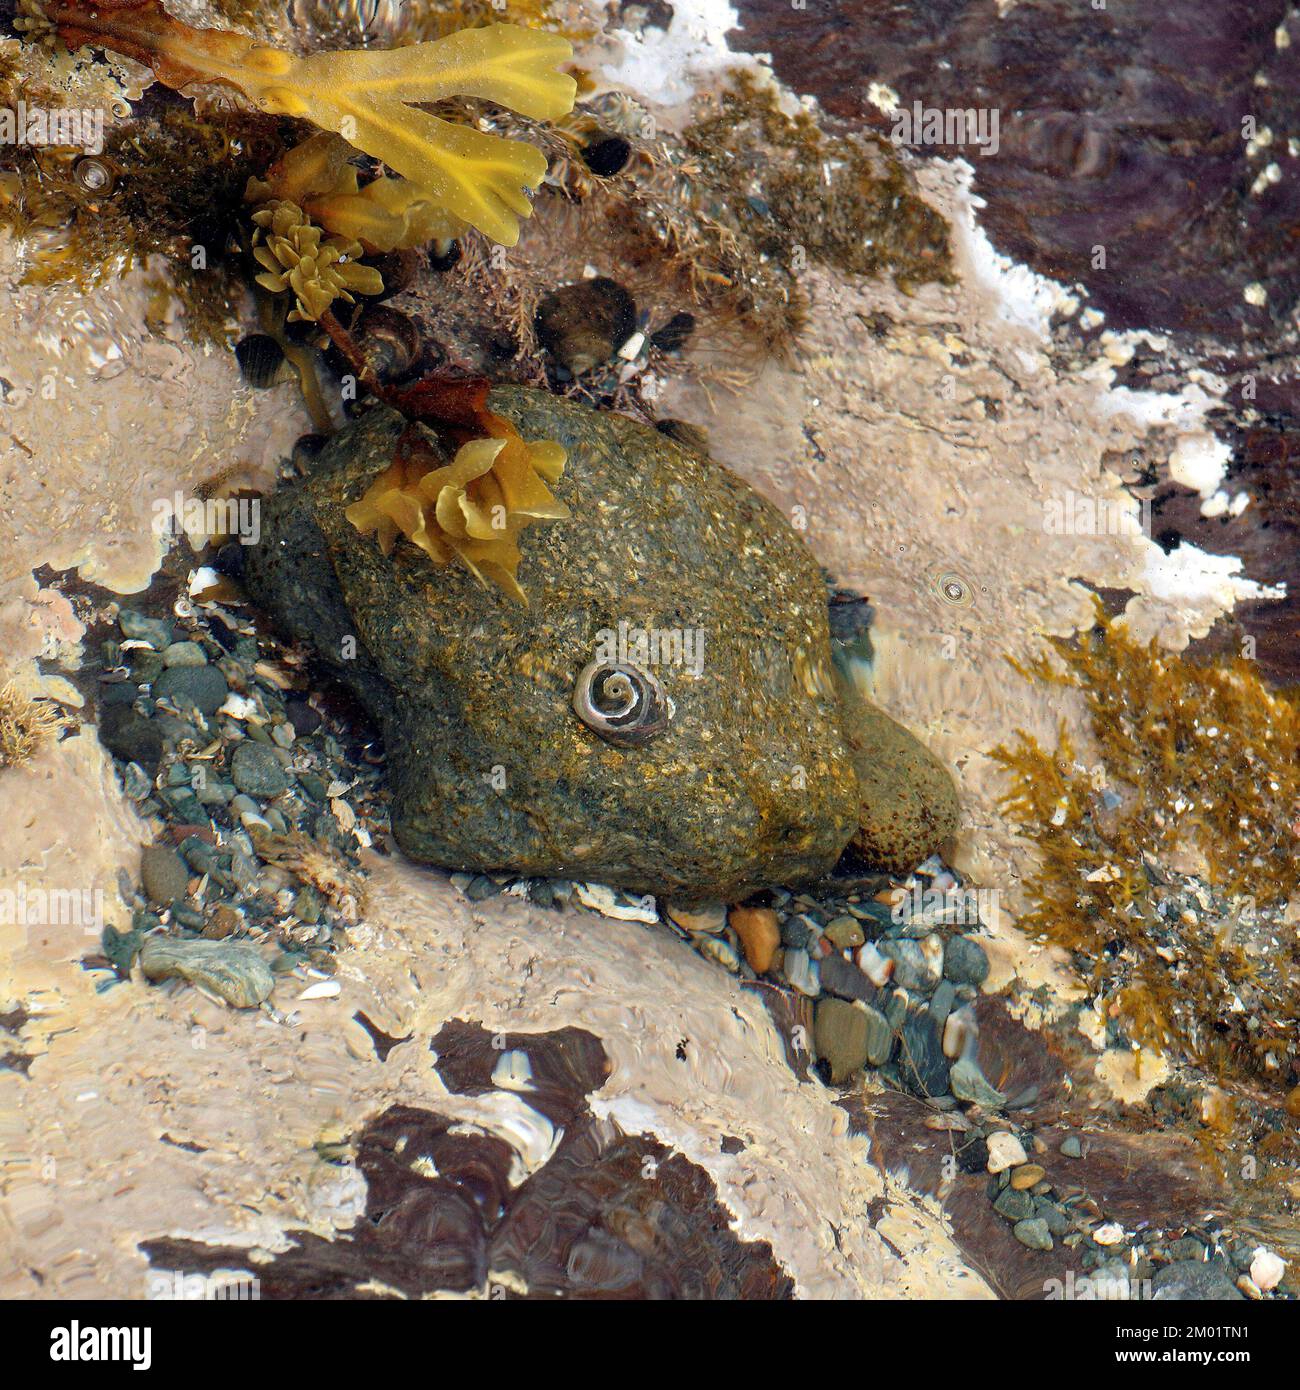 Fotografia a colori della roccia costiera l'immagine è un misto di piante marine e molluschi e geologia che mostrano motivi e texture rocciose. Foto Stock